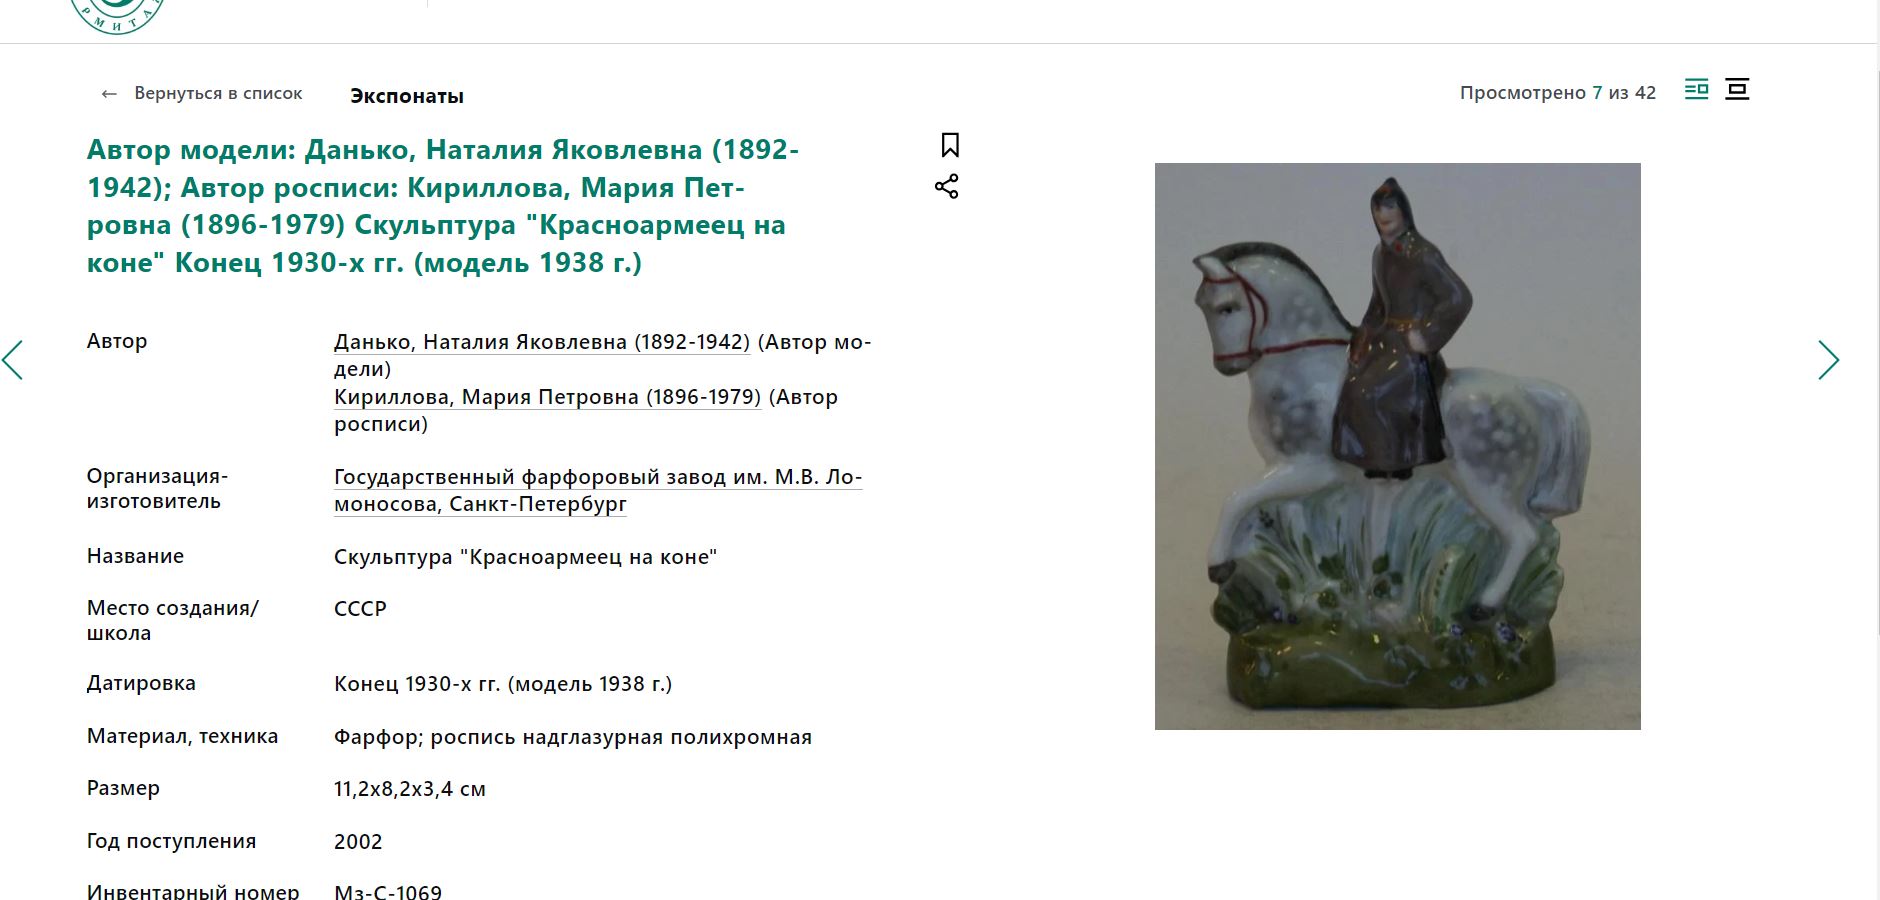 (Данько. ЛФЗ) Скульптура «Красноармеец на коне». <br>СССР, Ленинградский фарфоровый завод,  Н.Я. Данько автор модели (1938 год), 1938-1941 гг.